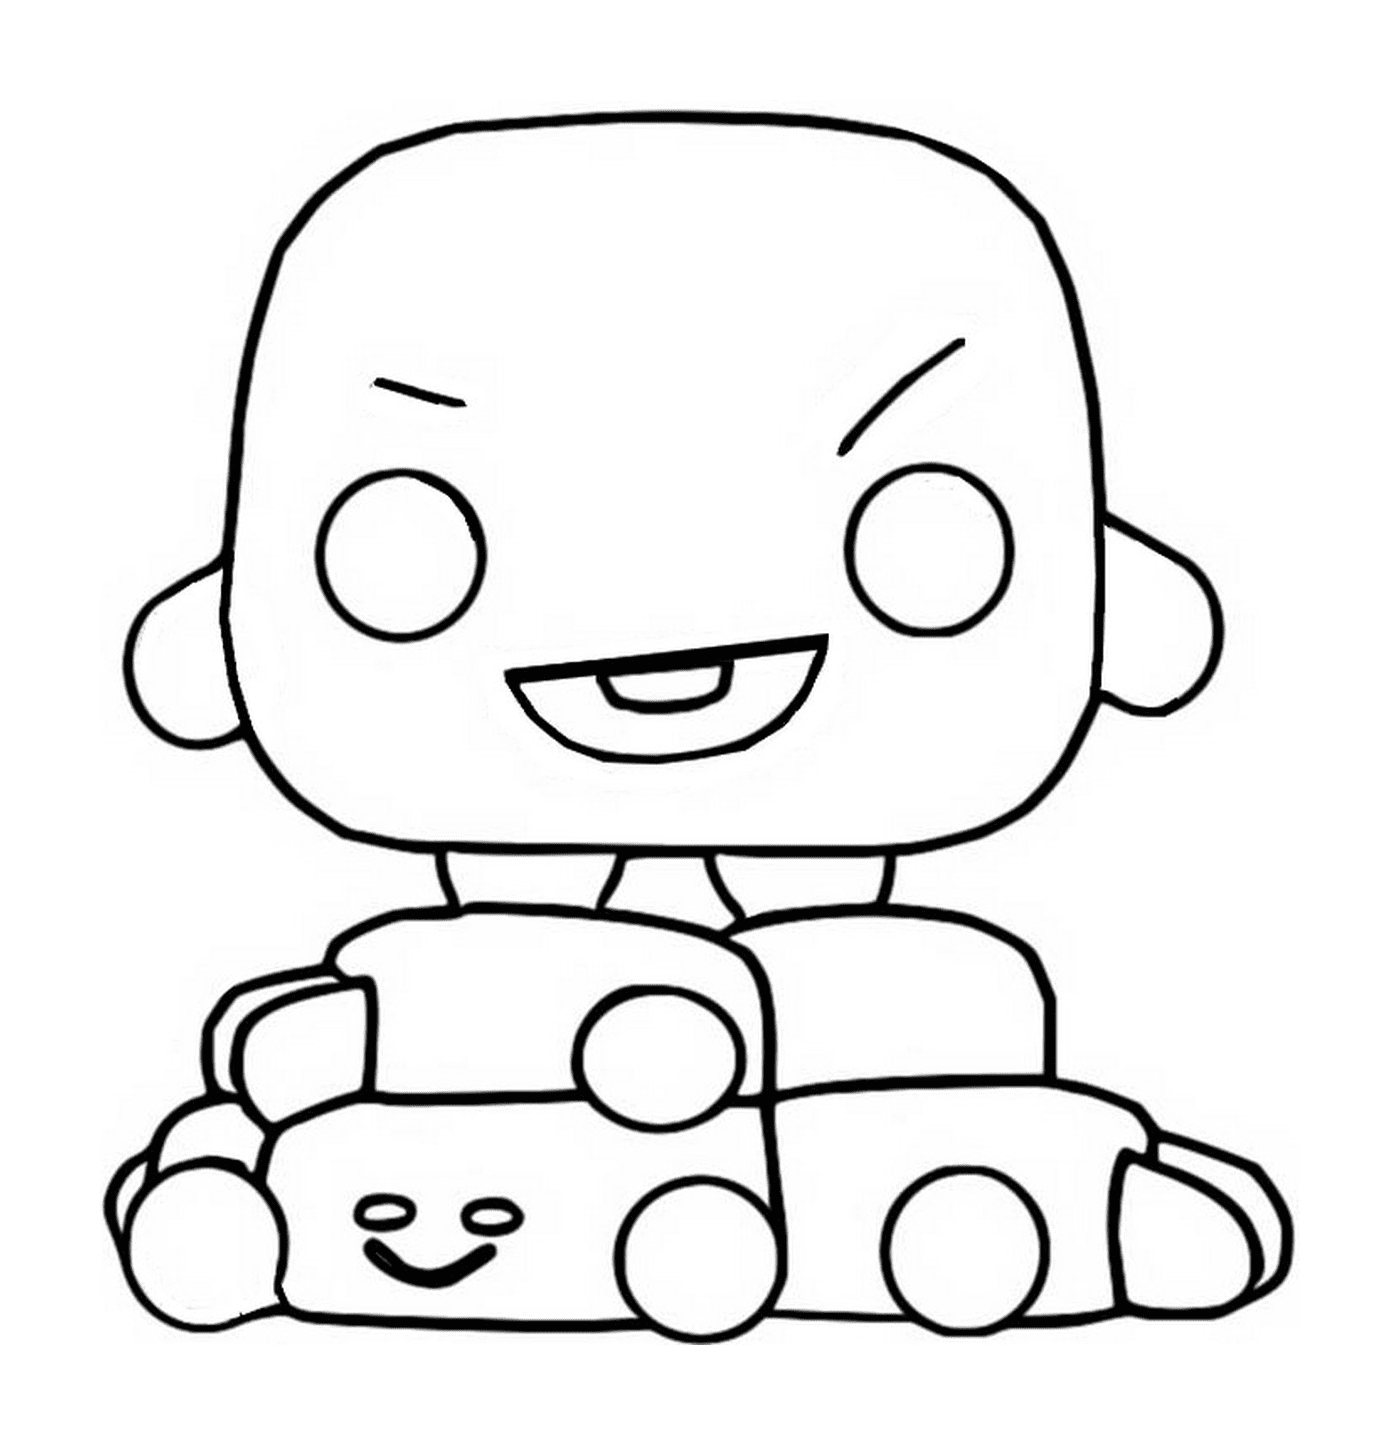  Шуки, BT21, персонаж мультфильма, сидящий на игрушечной машине 